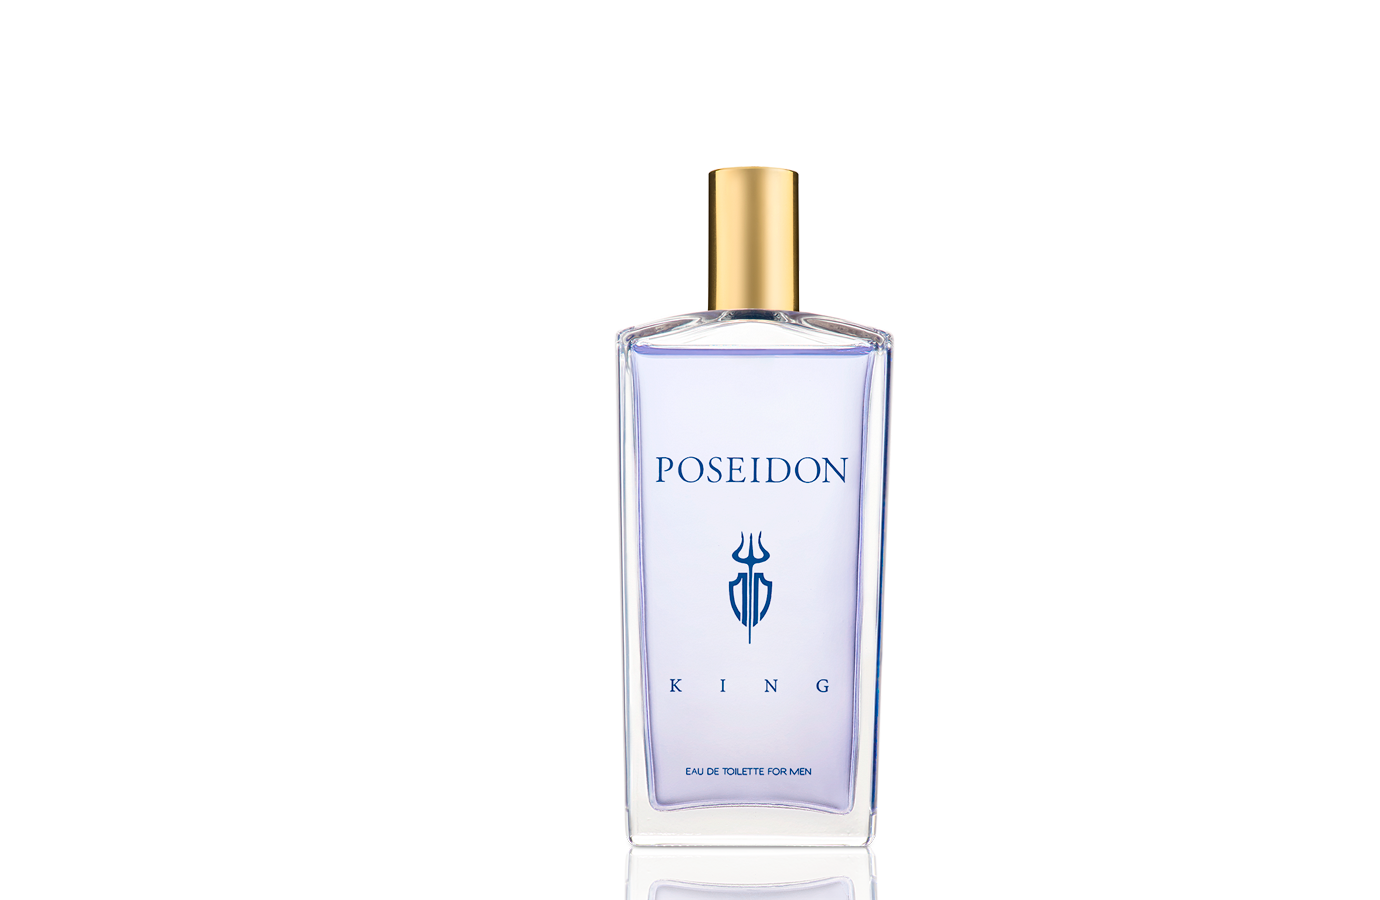 Instituto Español - ❕Da la bienvenida al miércoles de la mano de las  fragancias Poseidon Hombre y Poseidon King❕ 💙 Poseidon King combina una  envolvente fusión de aromas amaderados y aromáticos entre